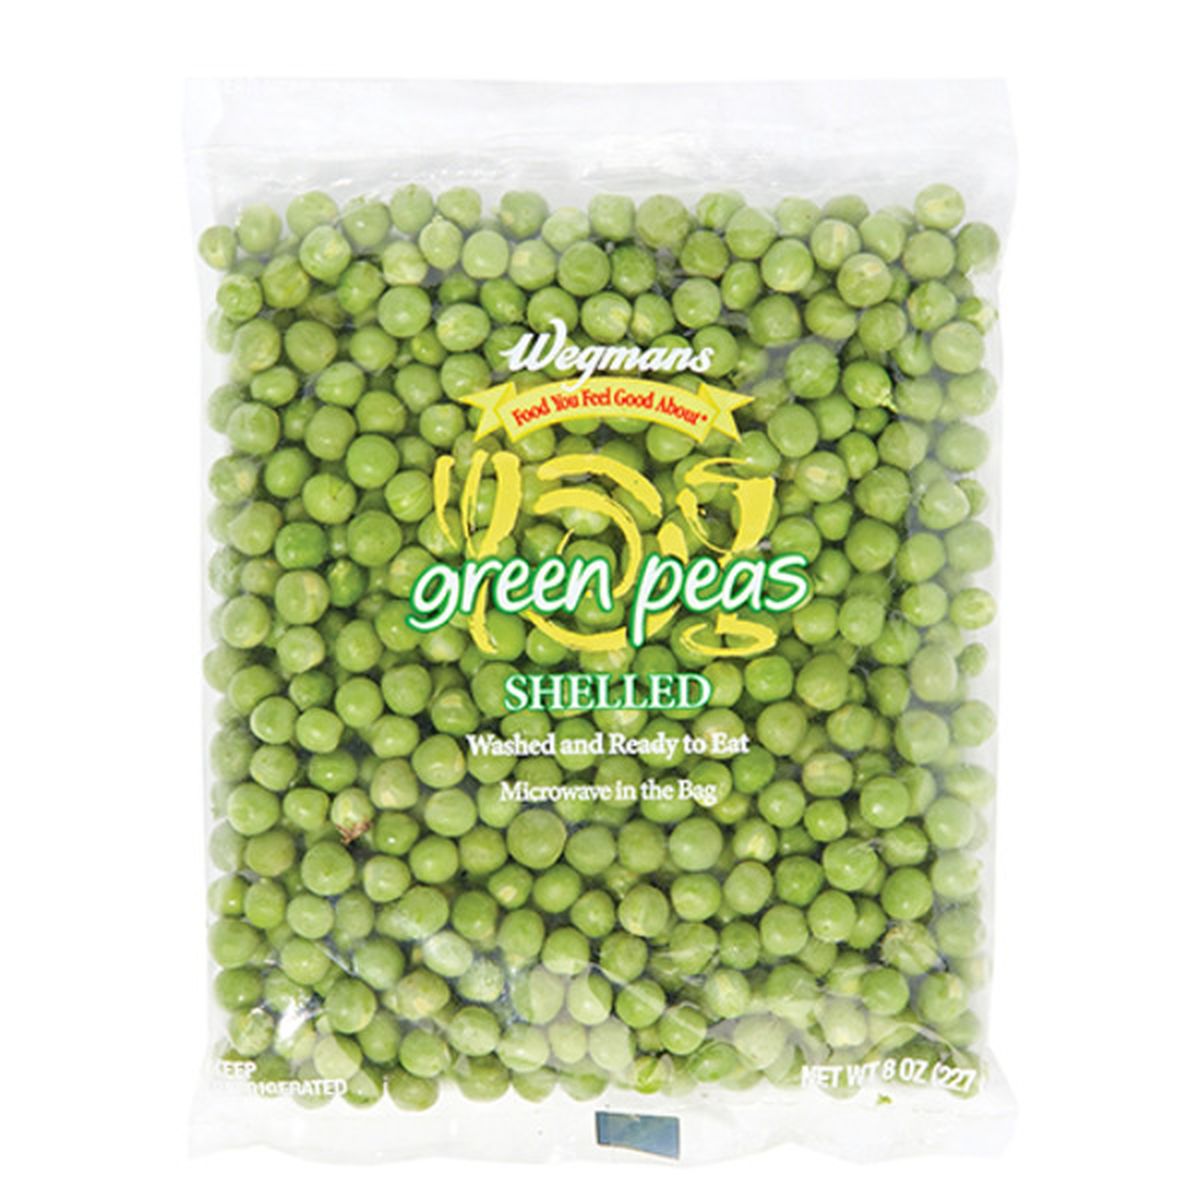 Calories in Wegmans Shelled Green Peas